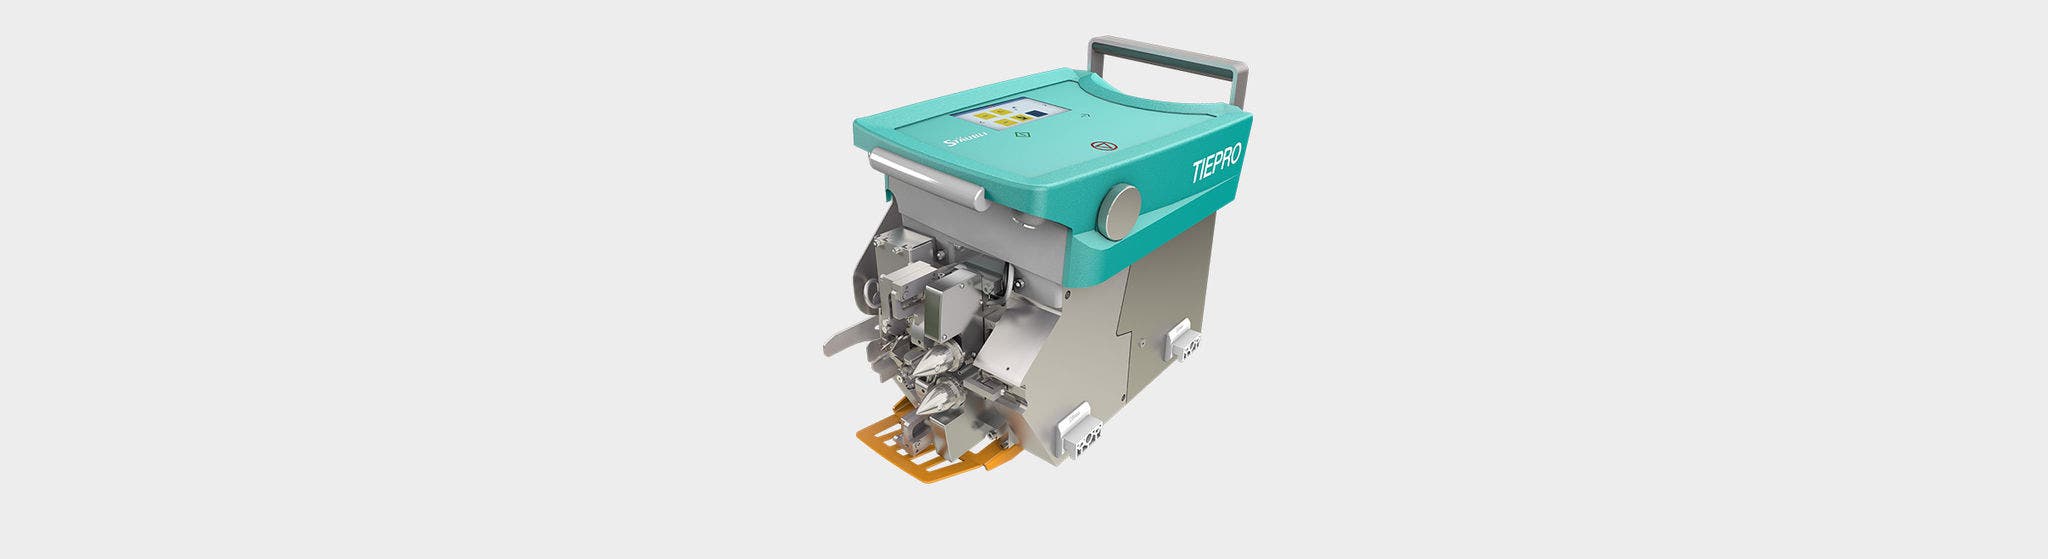 Stäubli TIEPRO çözgü düğümleme makinesi ağırlıklı olarak standart iplik tipleriyle çalışan dokumacılar için uygundur.